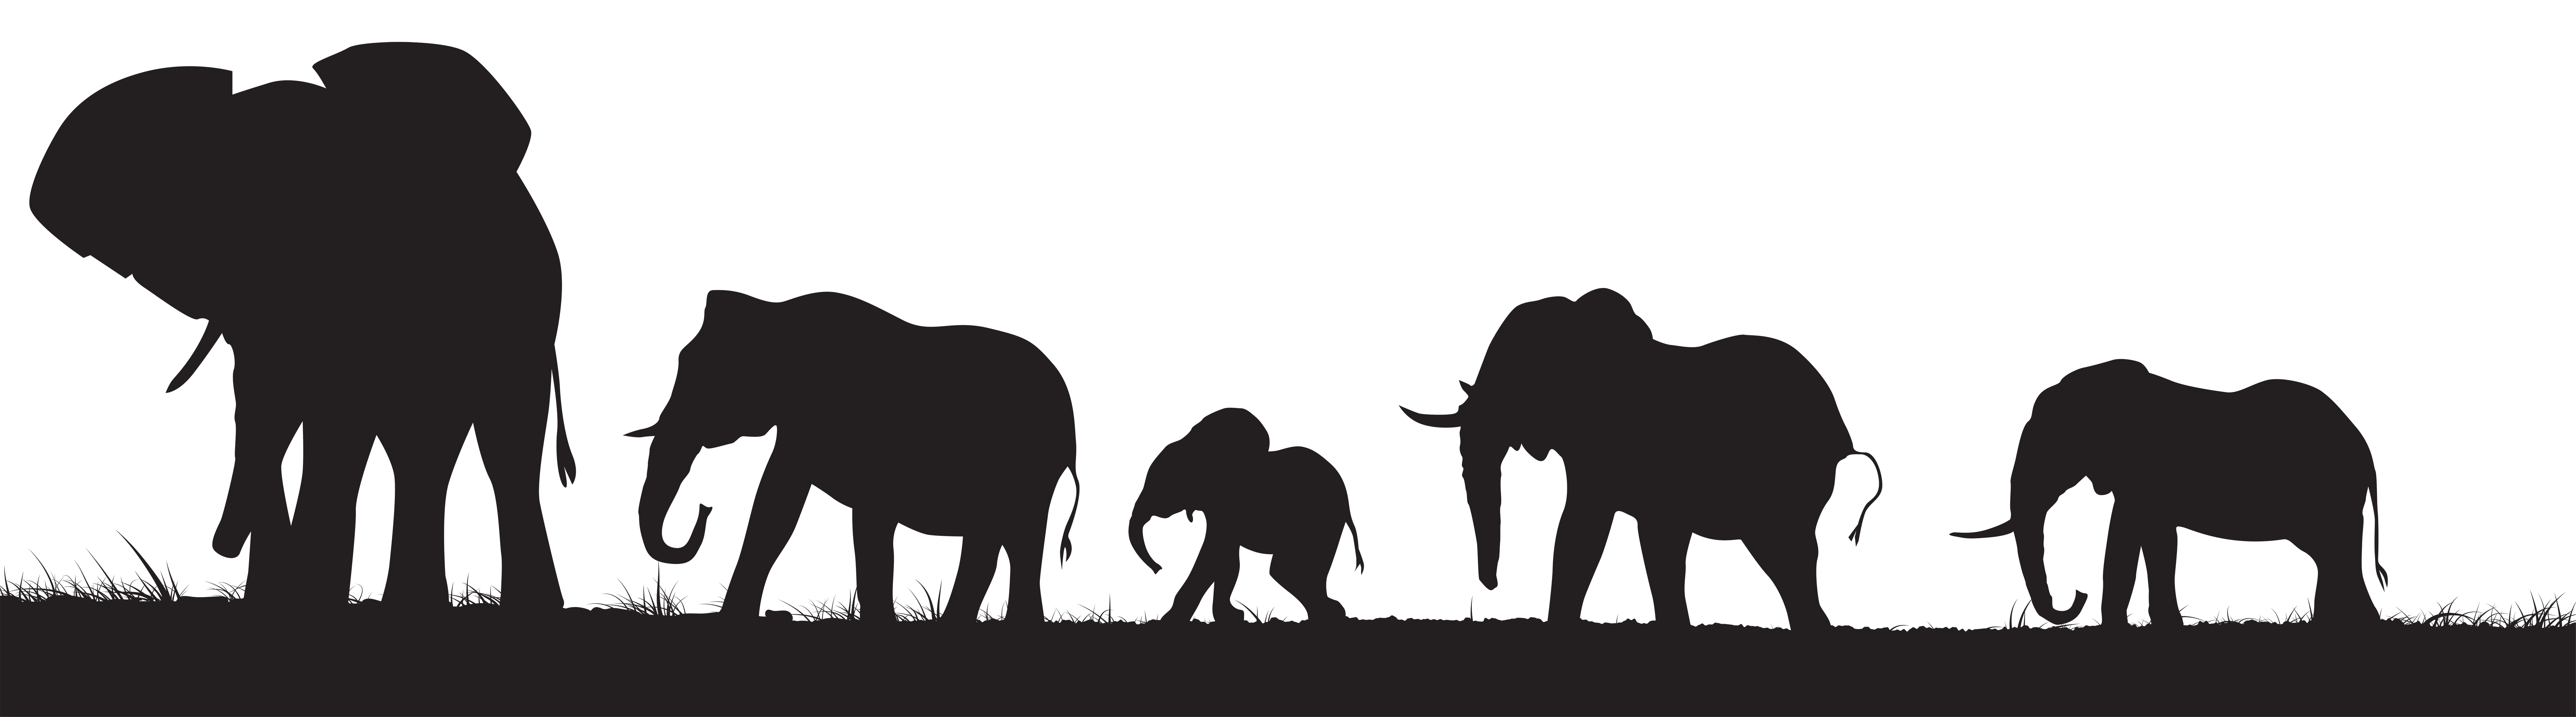 Clipart elephant silhouette. Elephants png clip art